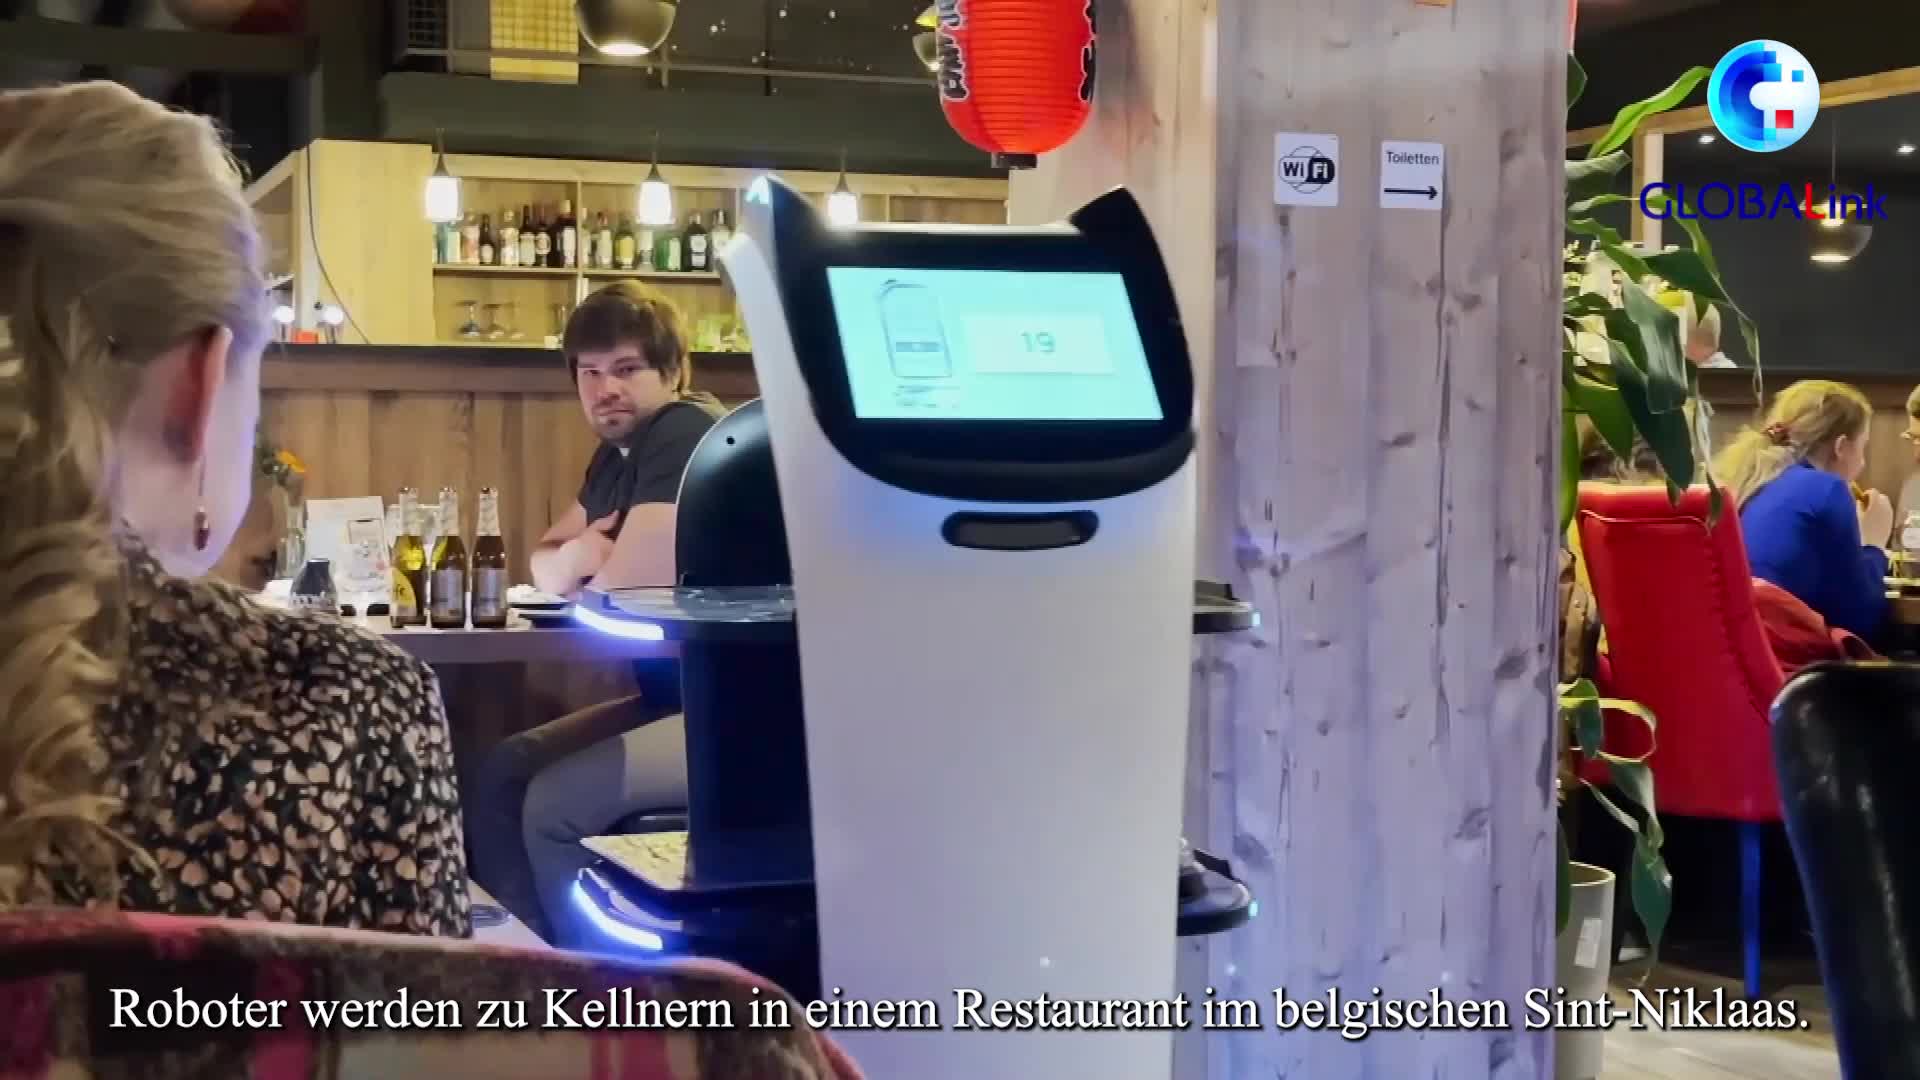 GLOBALink | Roboter werden zu ”Star-Kellnern” in einem belgischen Restaurant